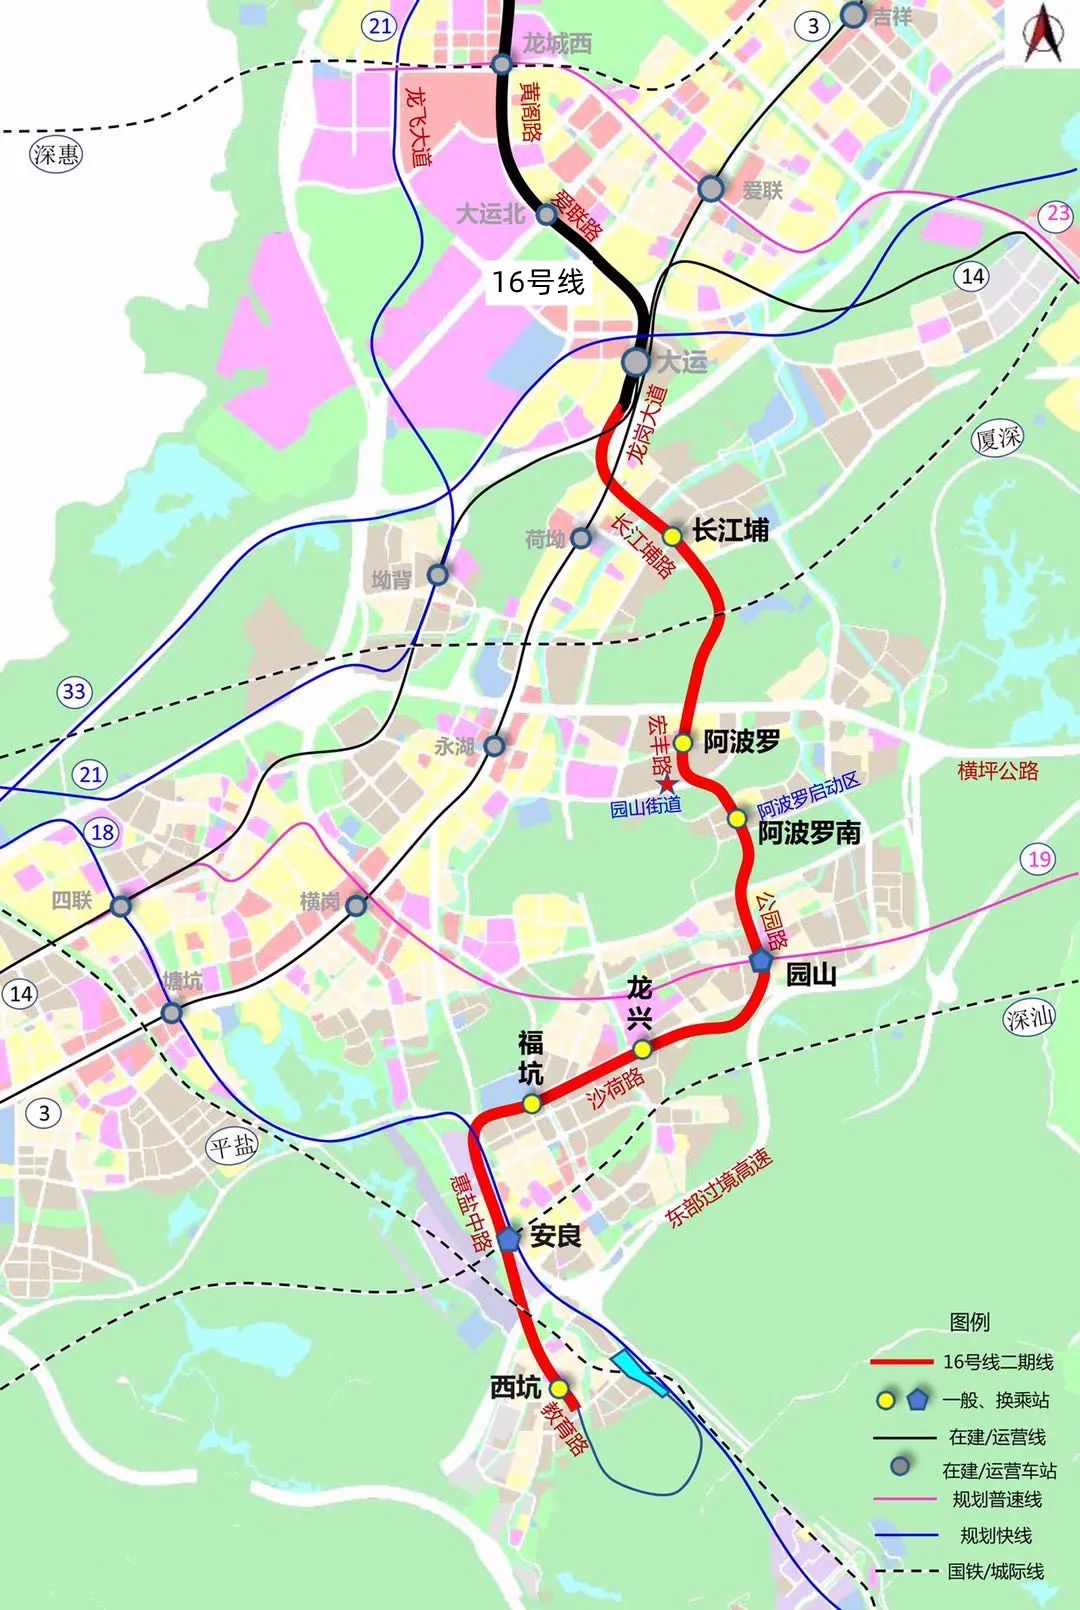 深圳地铁16号线二期最新进展 长江埔站进入附属结构施工阶段